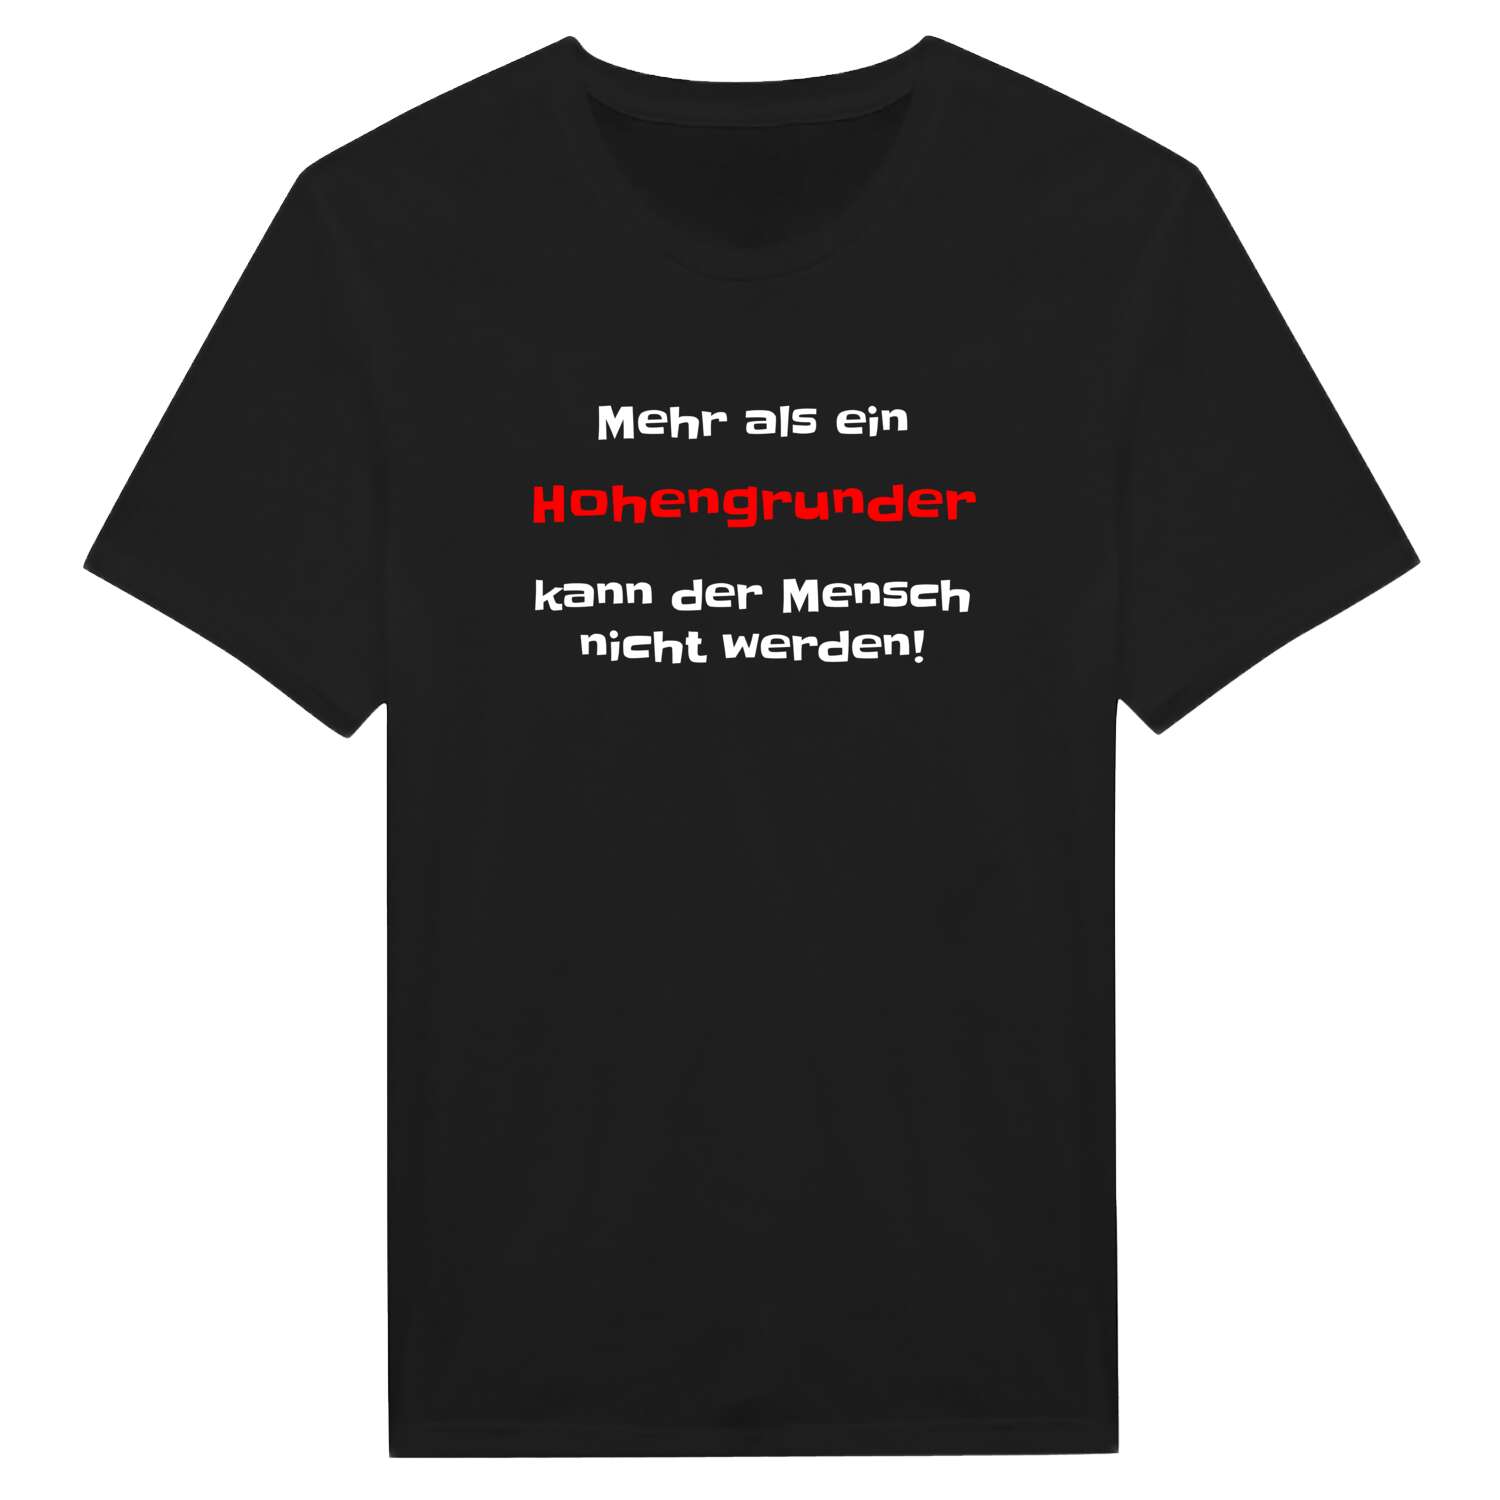 Hohengrund T-Shirt »Mehr als ein«